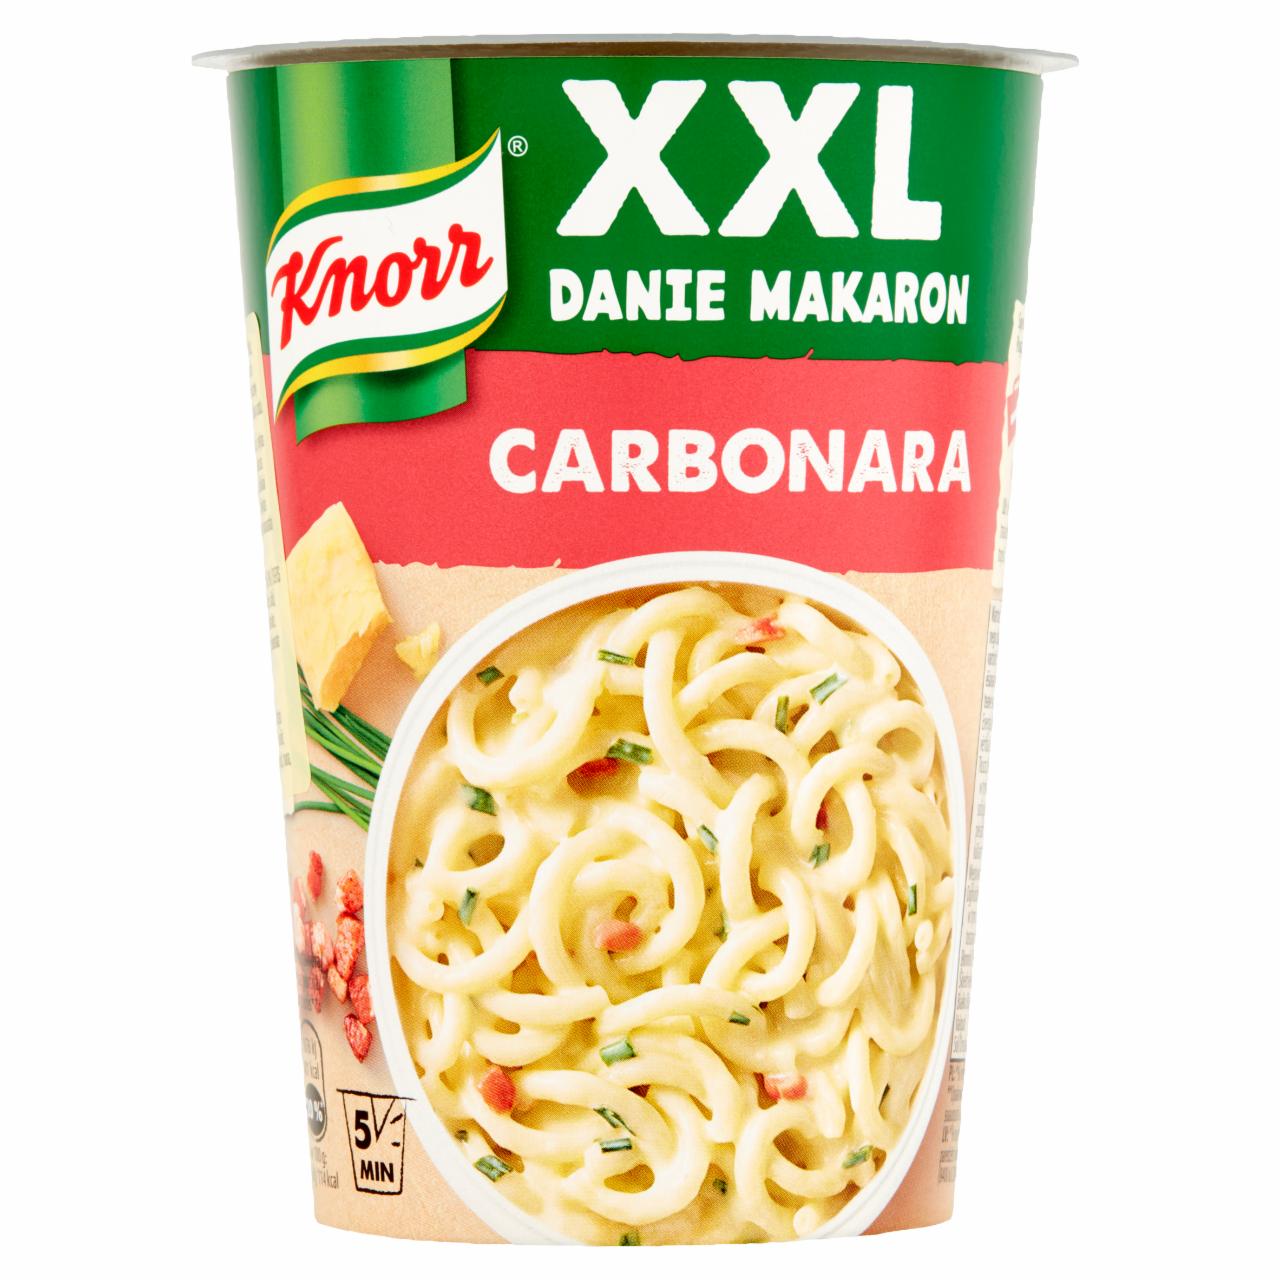 Zdjęcia - Knorr XXL Danie makaron Carbonara 92 g